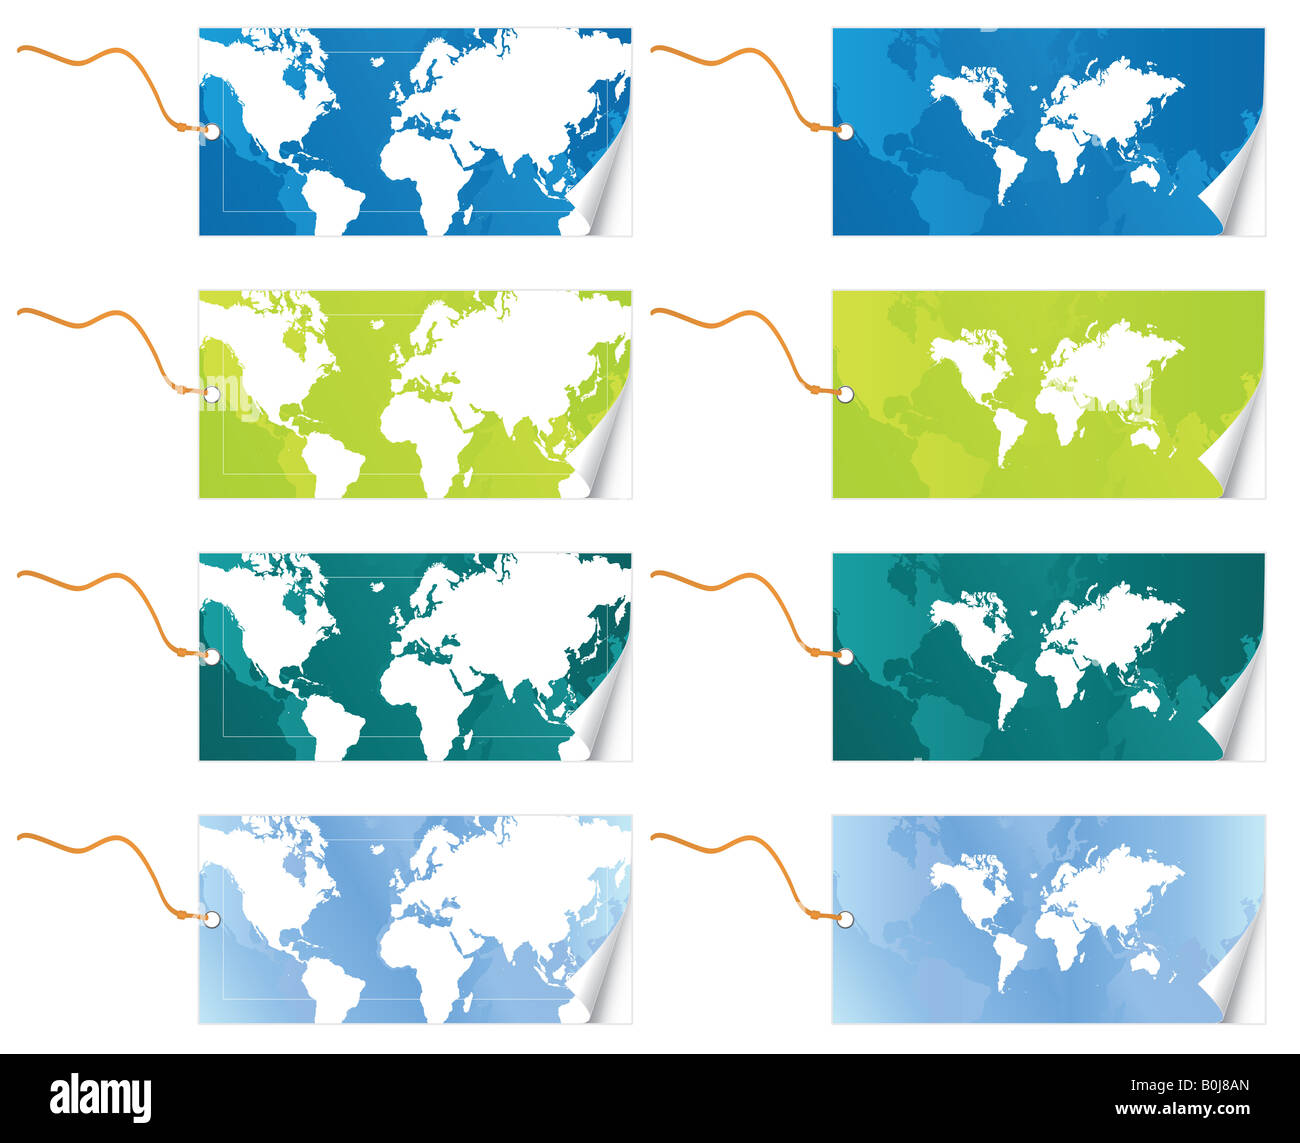 Illustrazione Vettoriale di due differenti mappa Mondo slick tag con guinzaglio in quattro varianti di colore effetto di pelatura Foto Stock